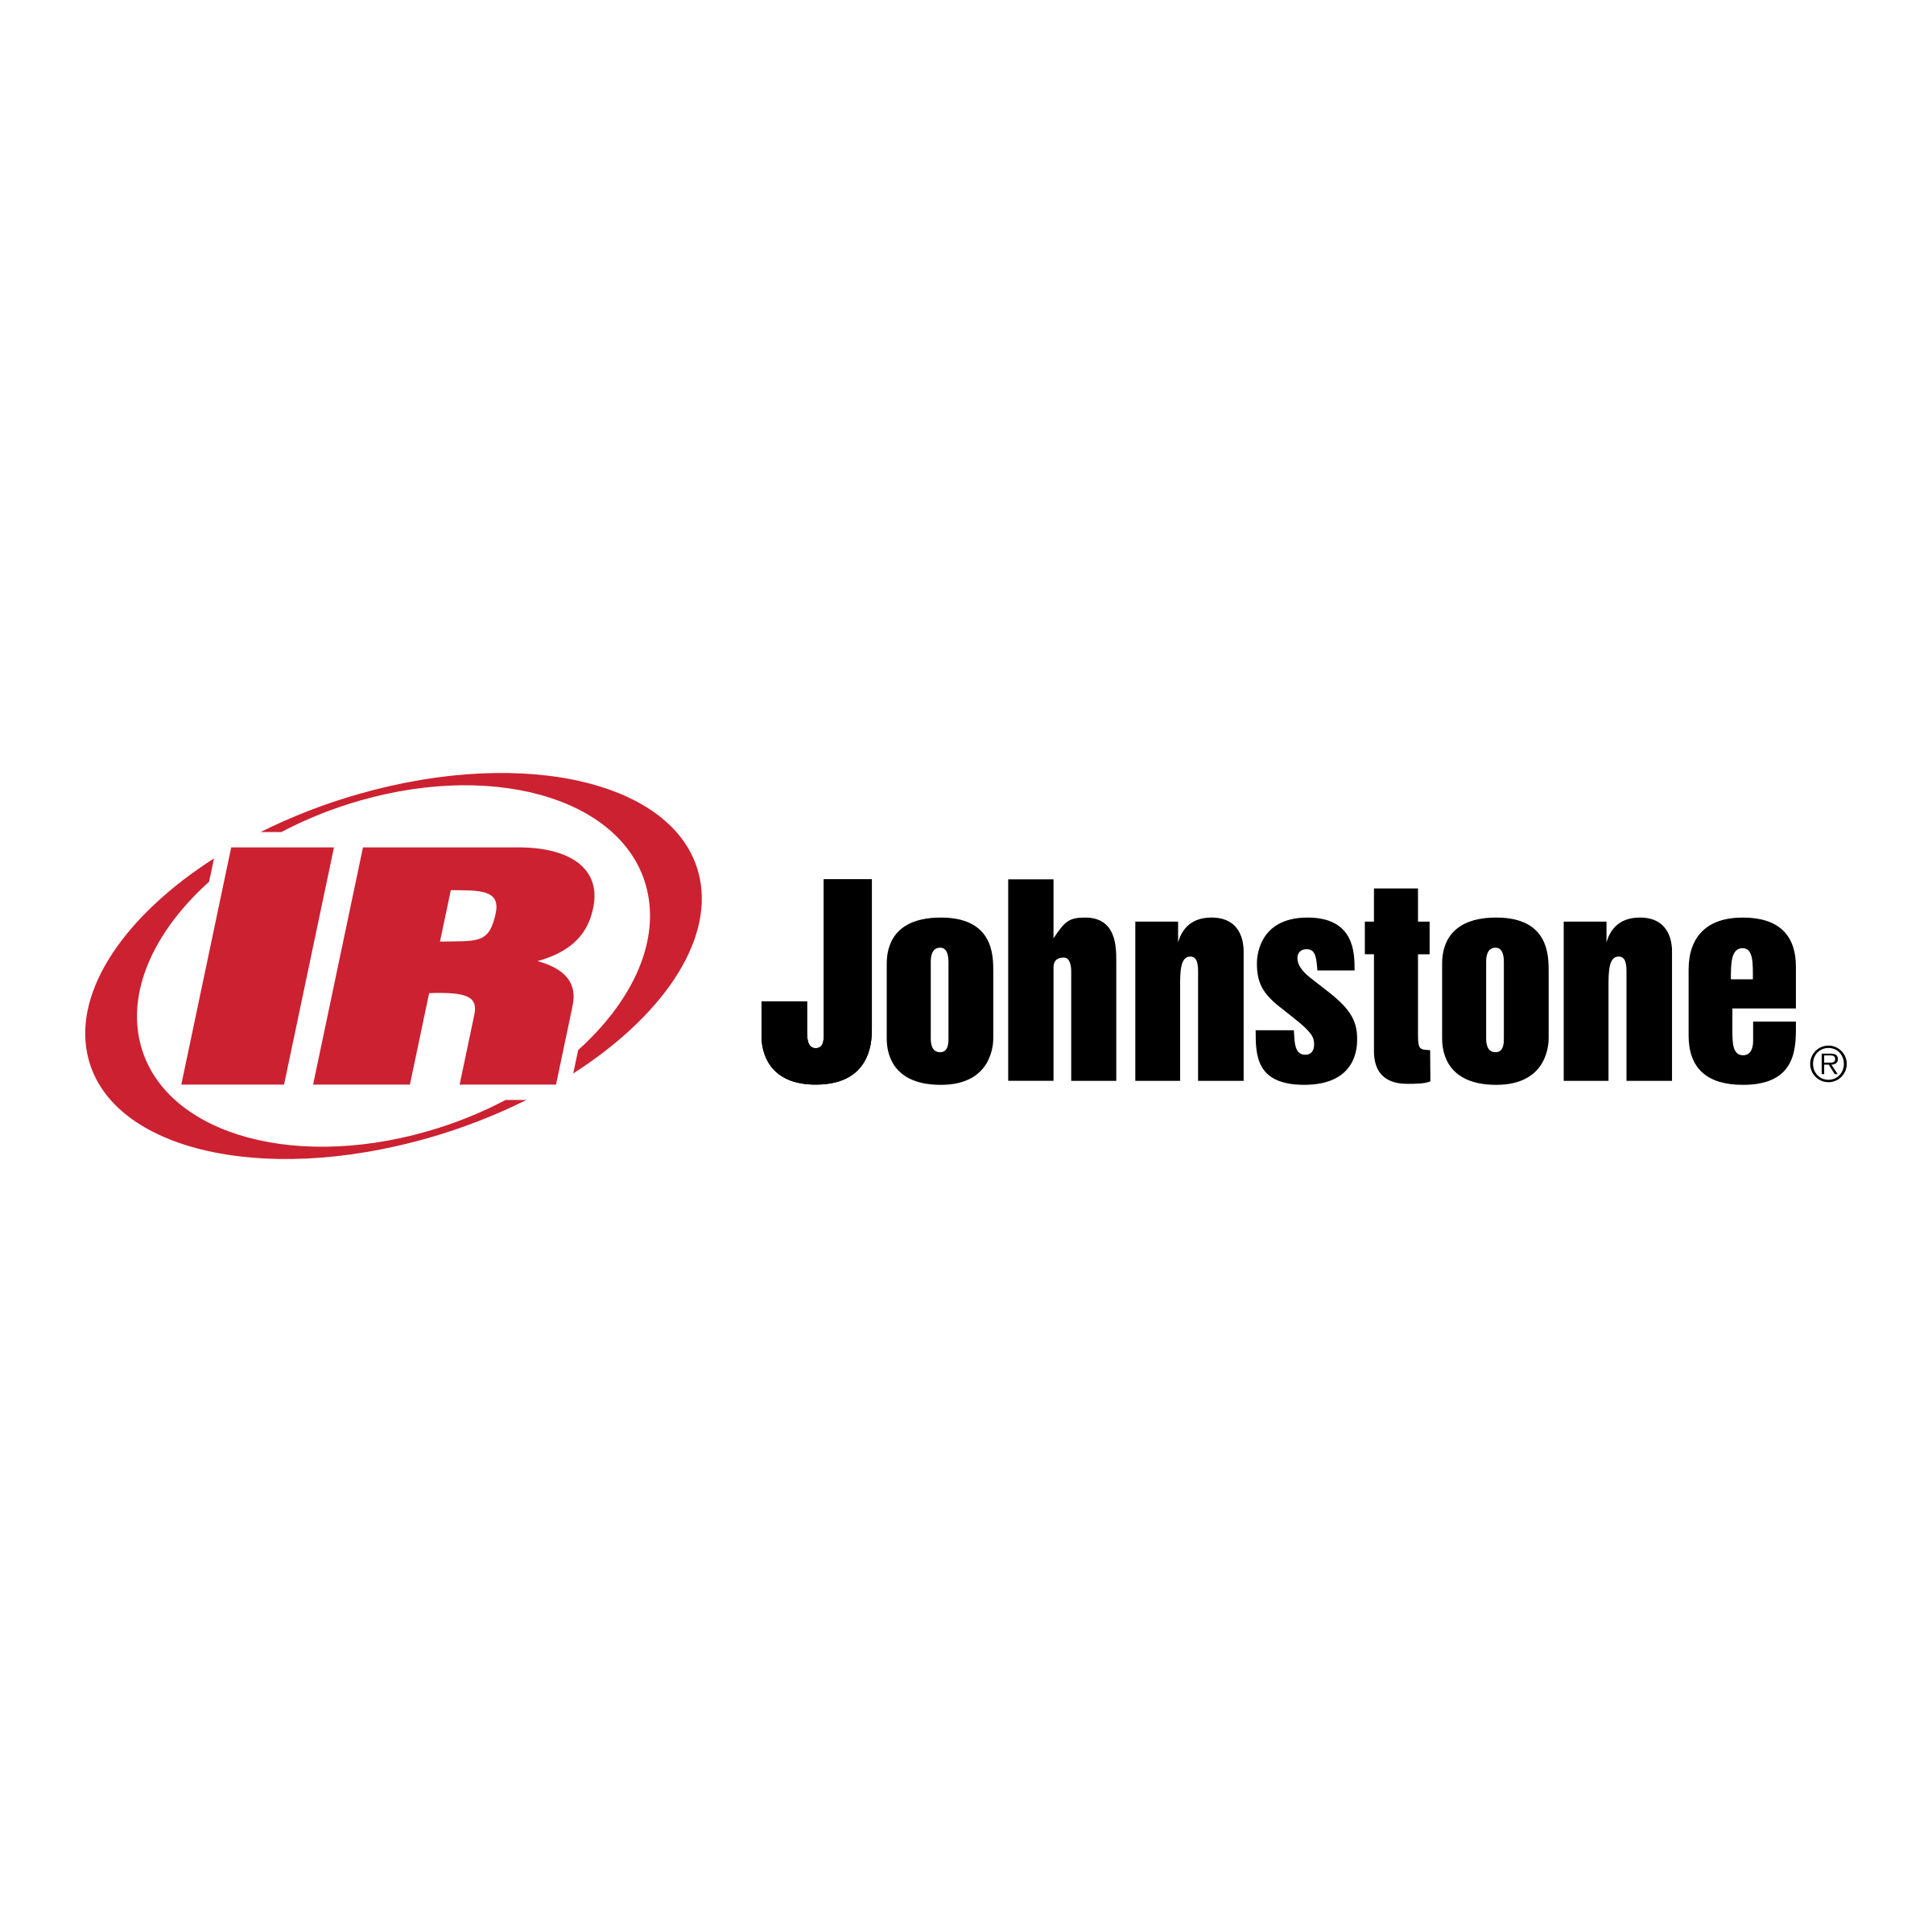 Johnstone Logo - Johnstone Logo PNG Transparent & SVG Vector - Freebie Supply